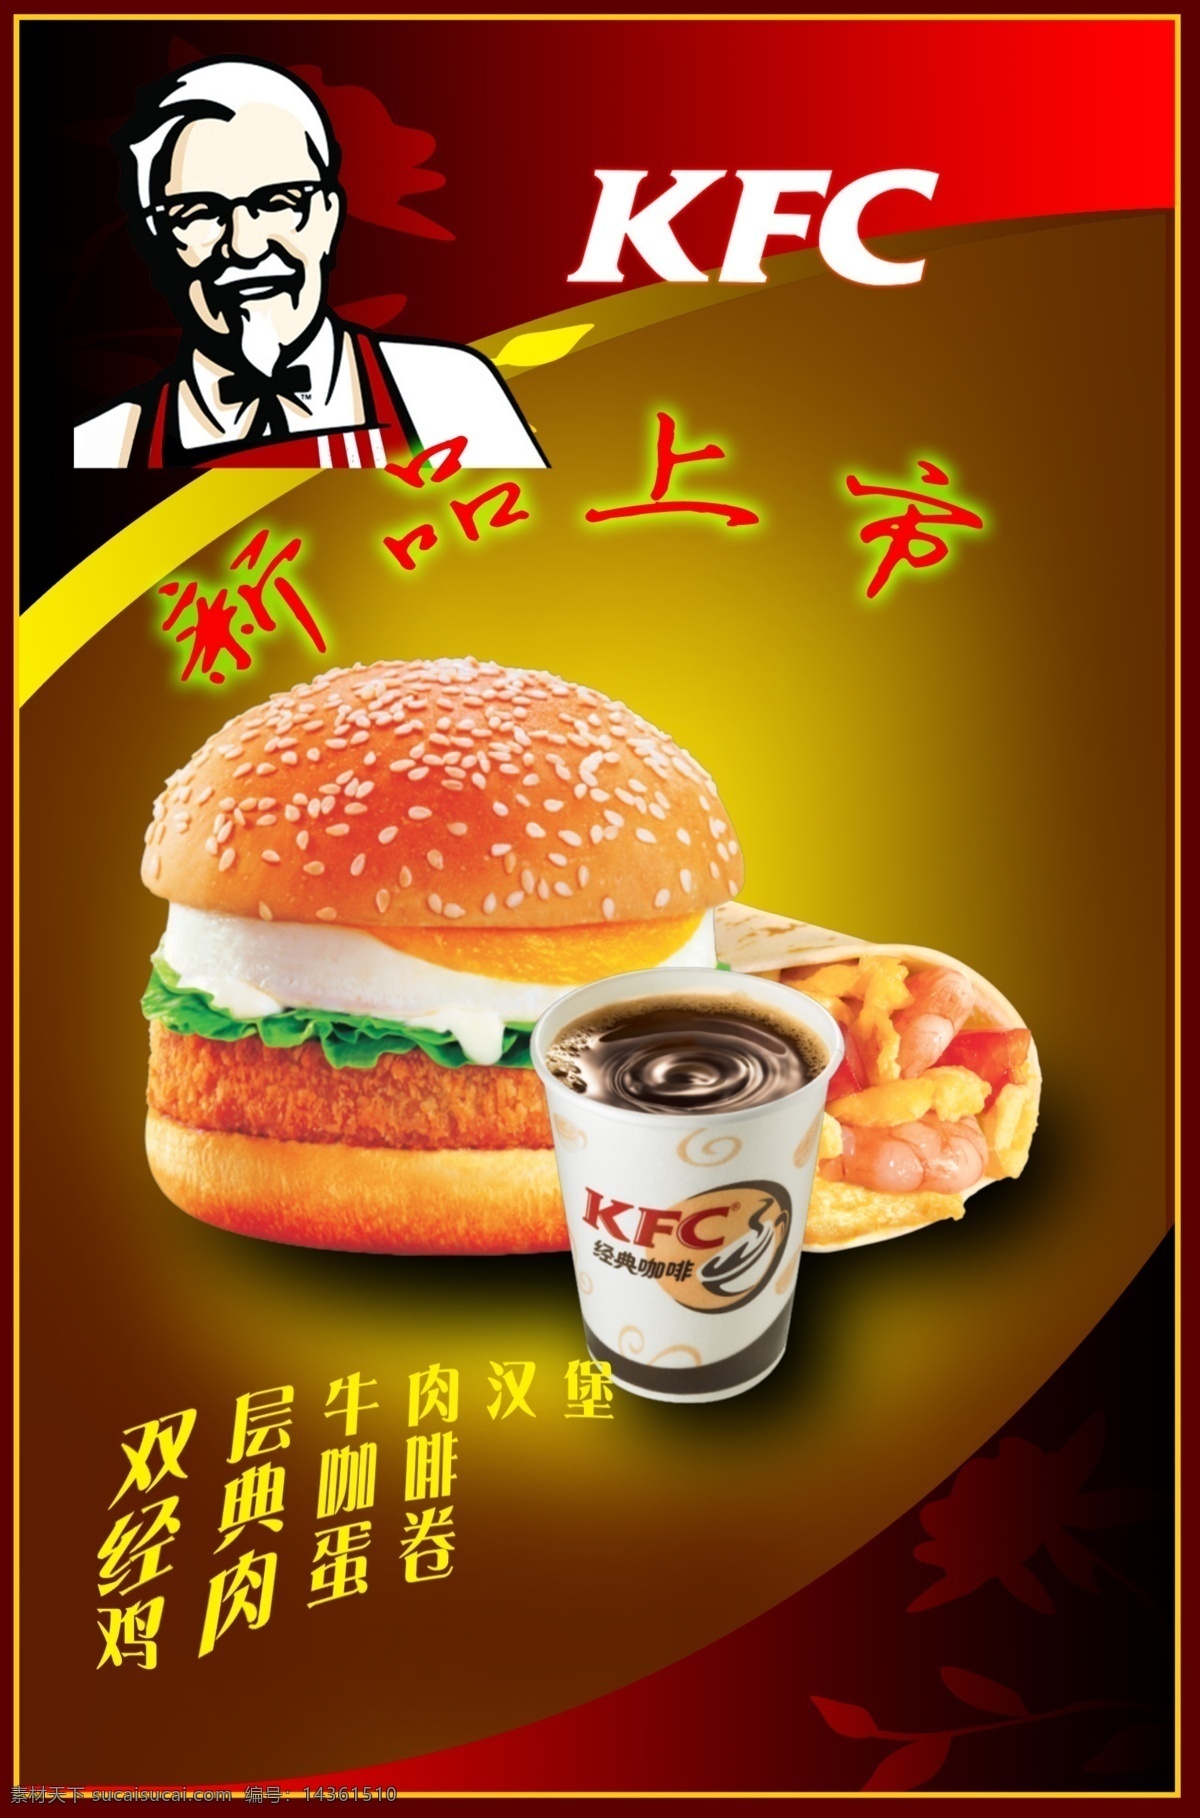 灯光 片 蛋卷 广告设计模板 汉堡包 咖啡 源文件 灯光片 kfc人物 其他海报设计